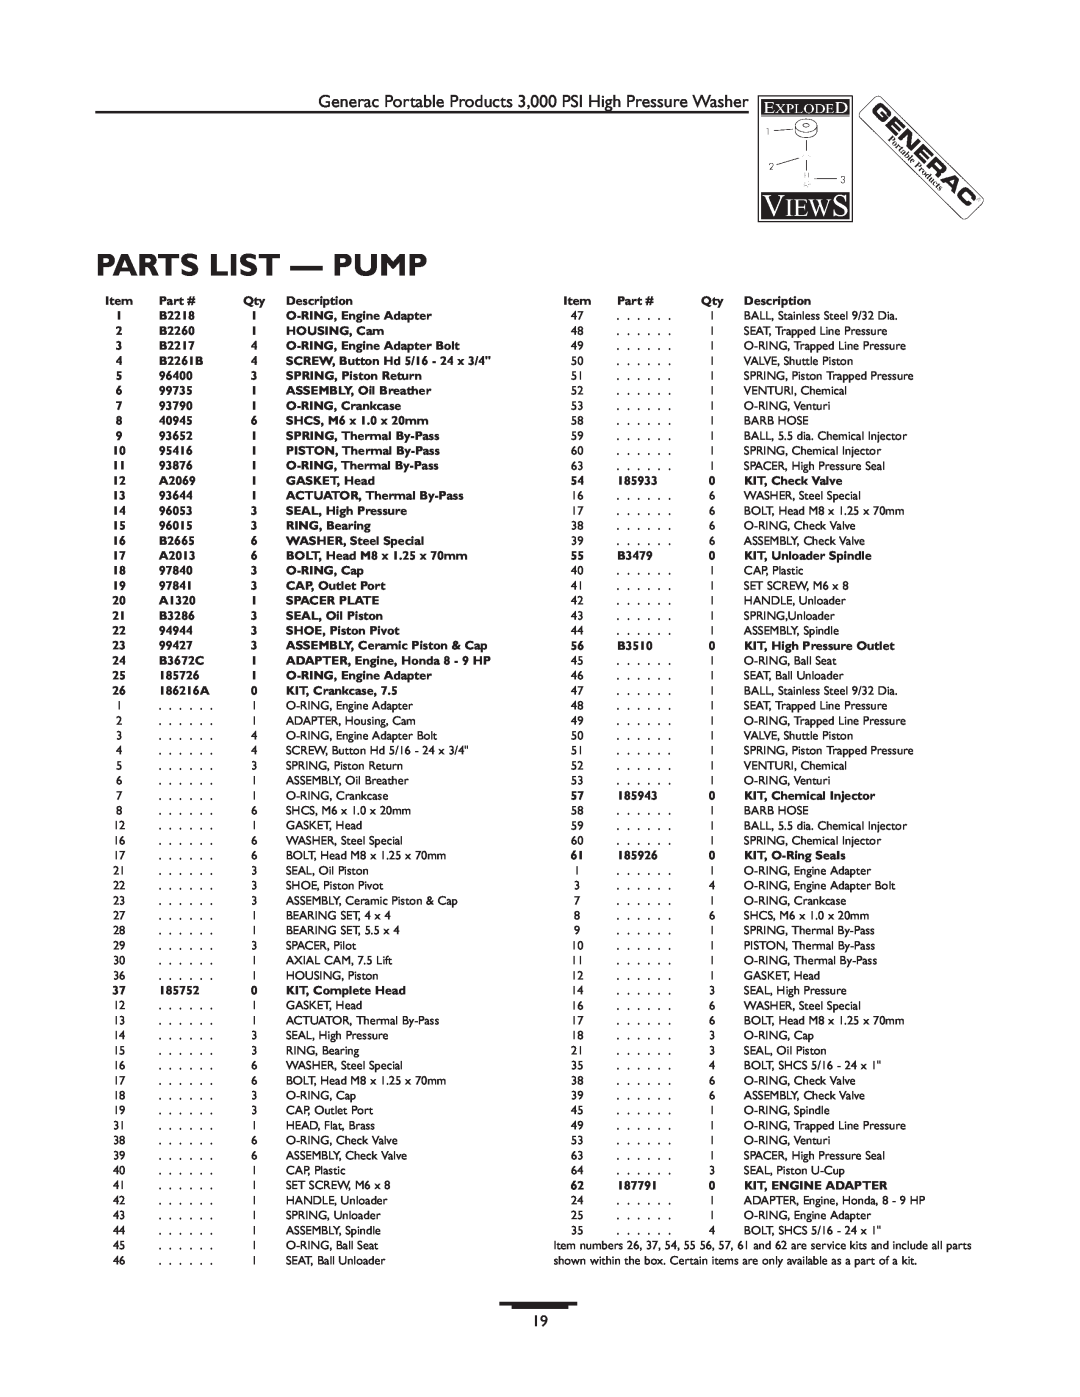 Generac 1418-0 manual Parts List - Pump 